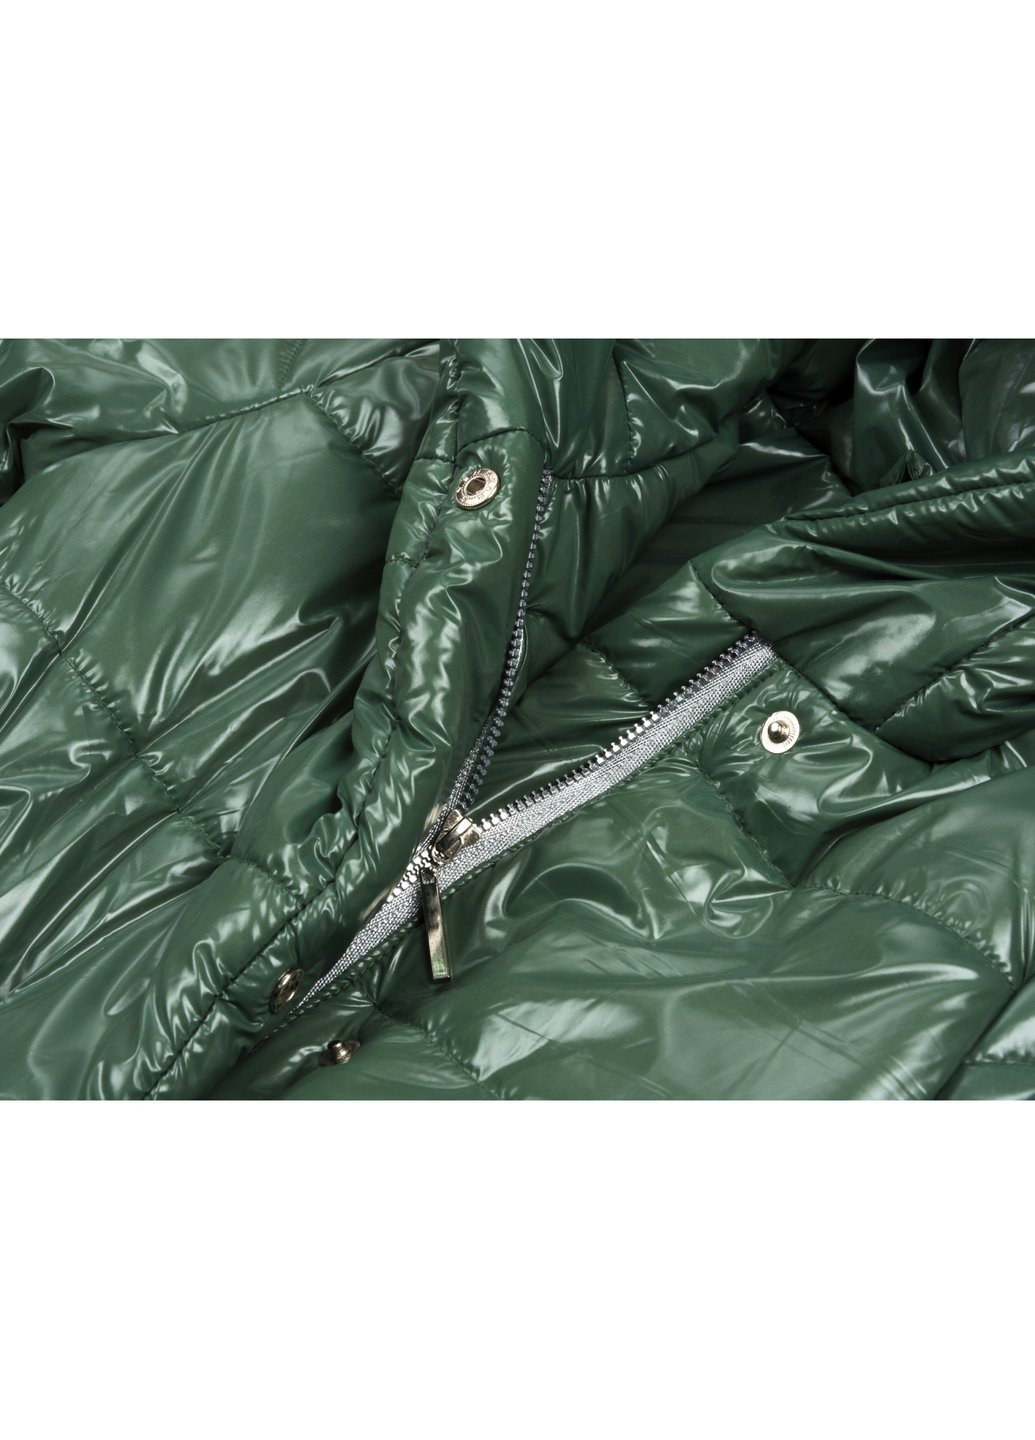 Зеленая демисезонная куртка удлиненная "felice" (19709-134-green) Brilliant